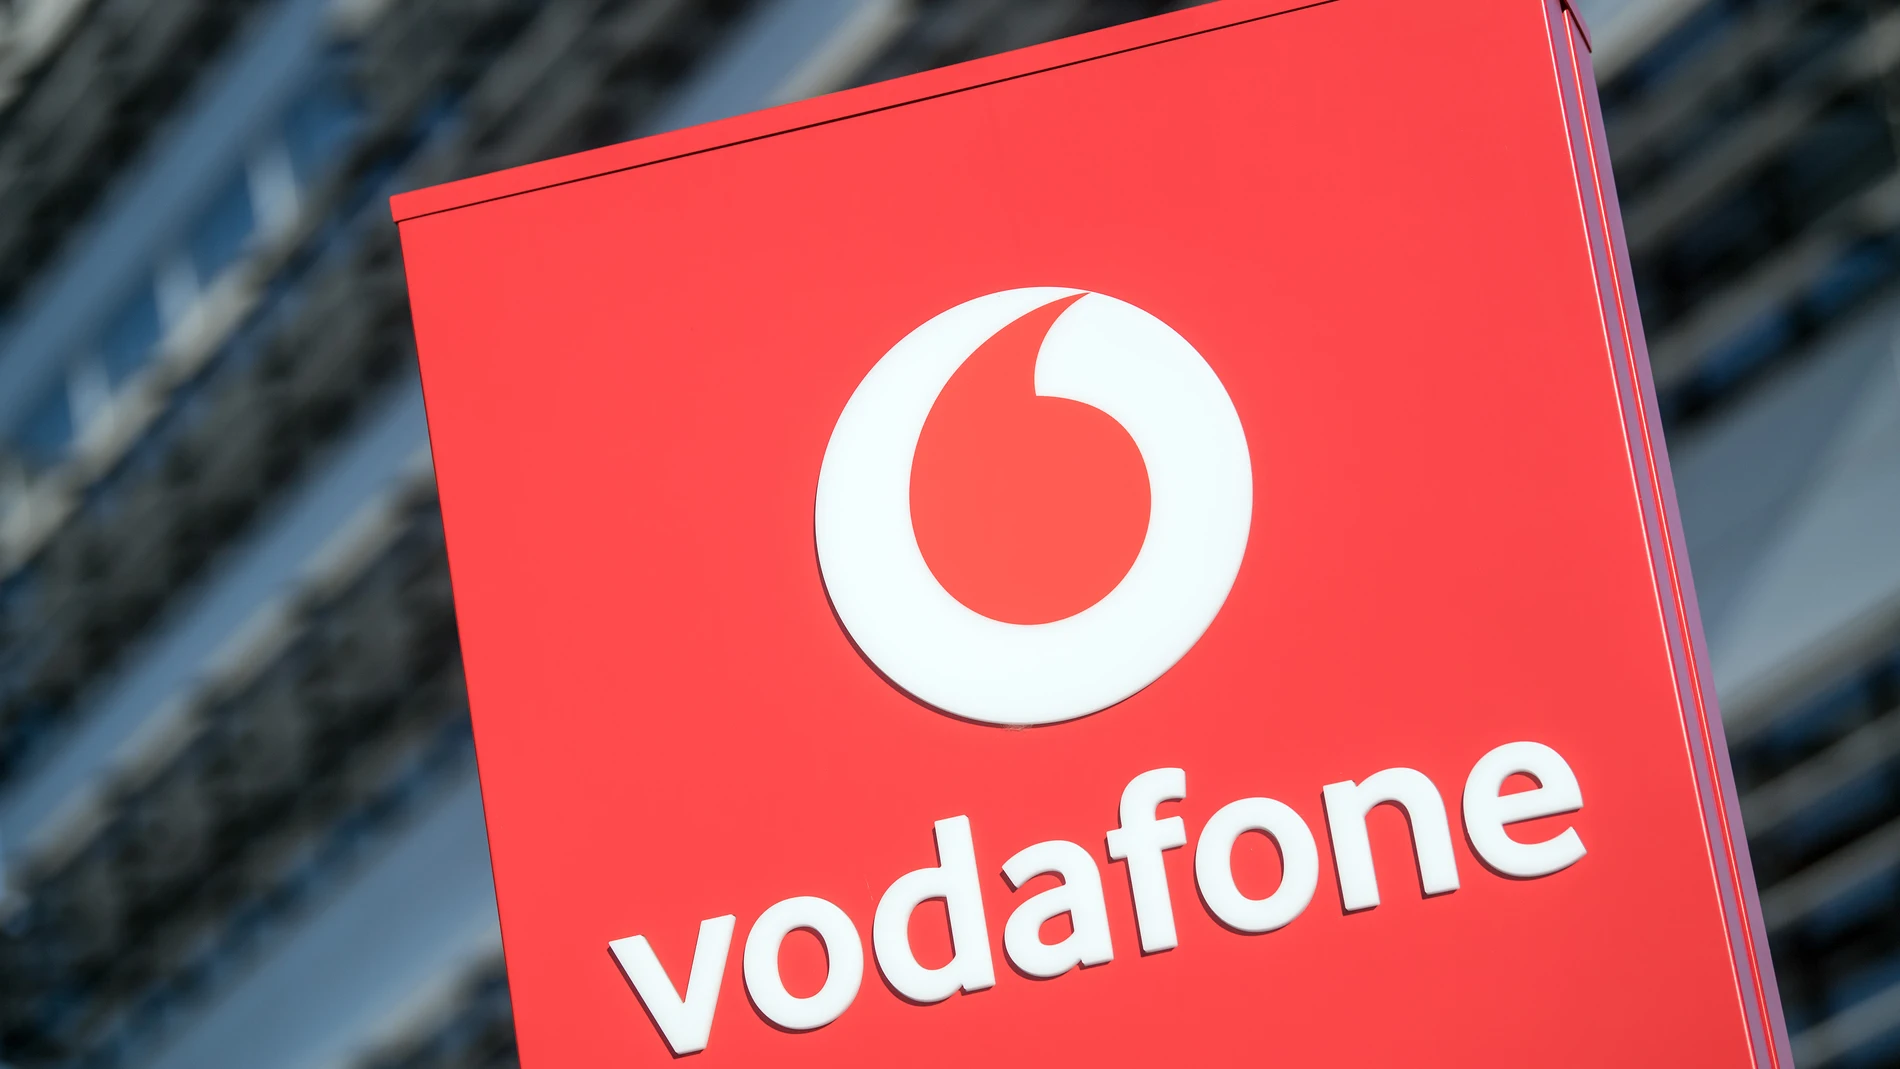 Economía.- (AMP) La CNMC autoriza la compra por parte de Zegona del negocio de Vodafone en España por 5.000 millones